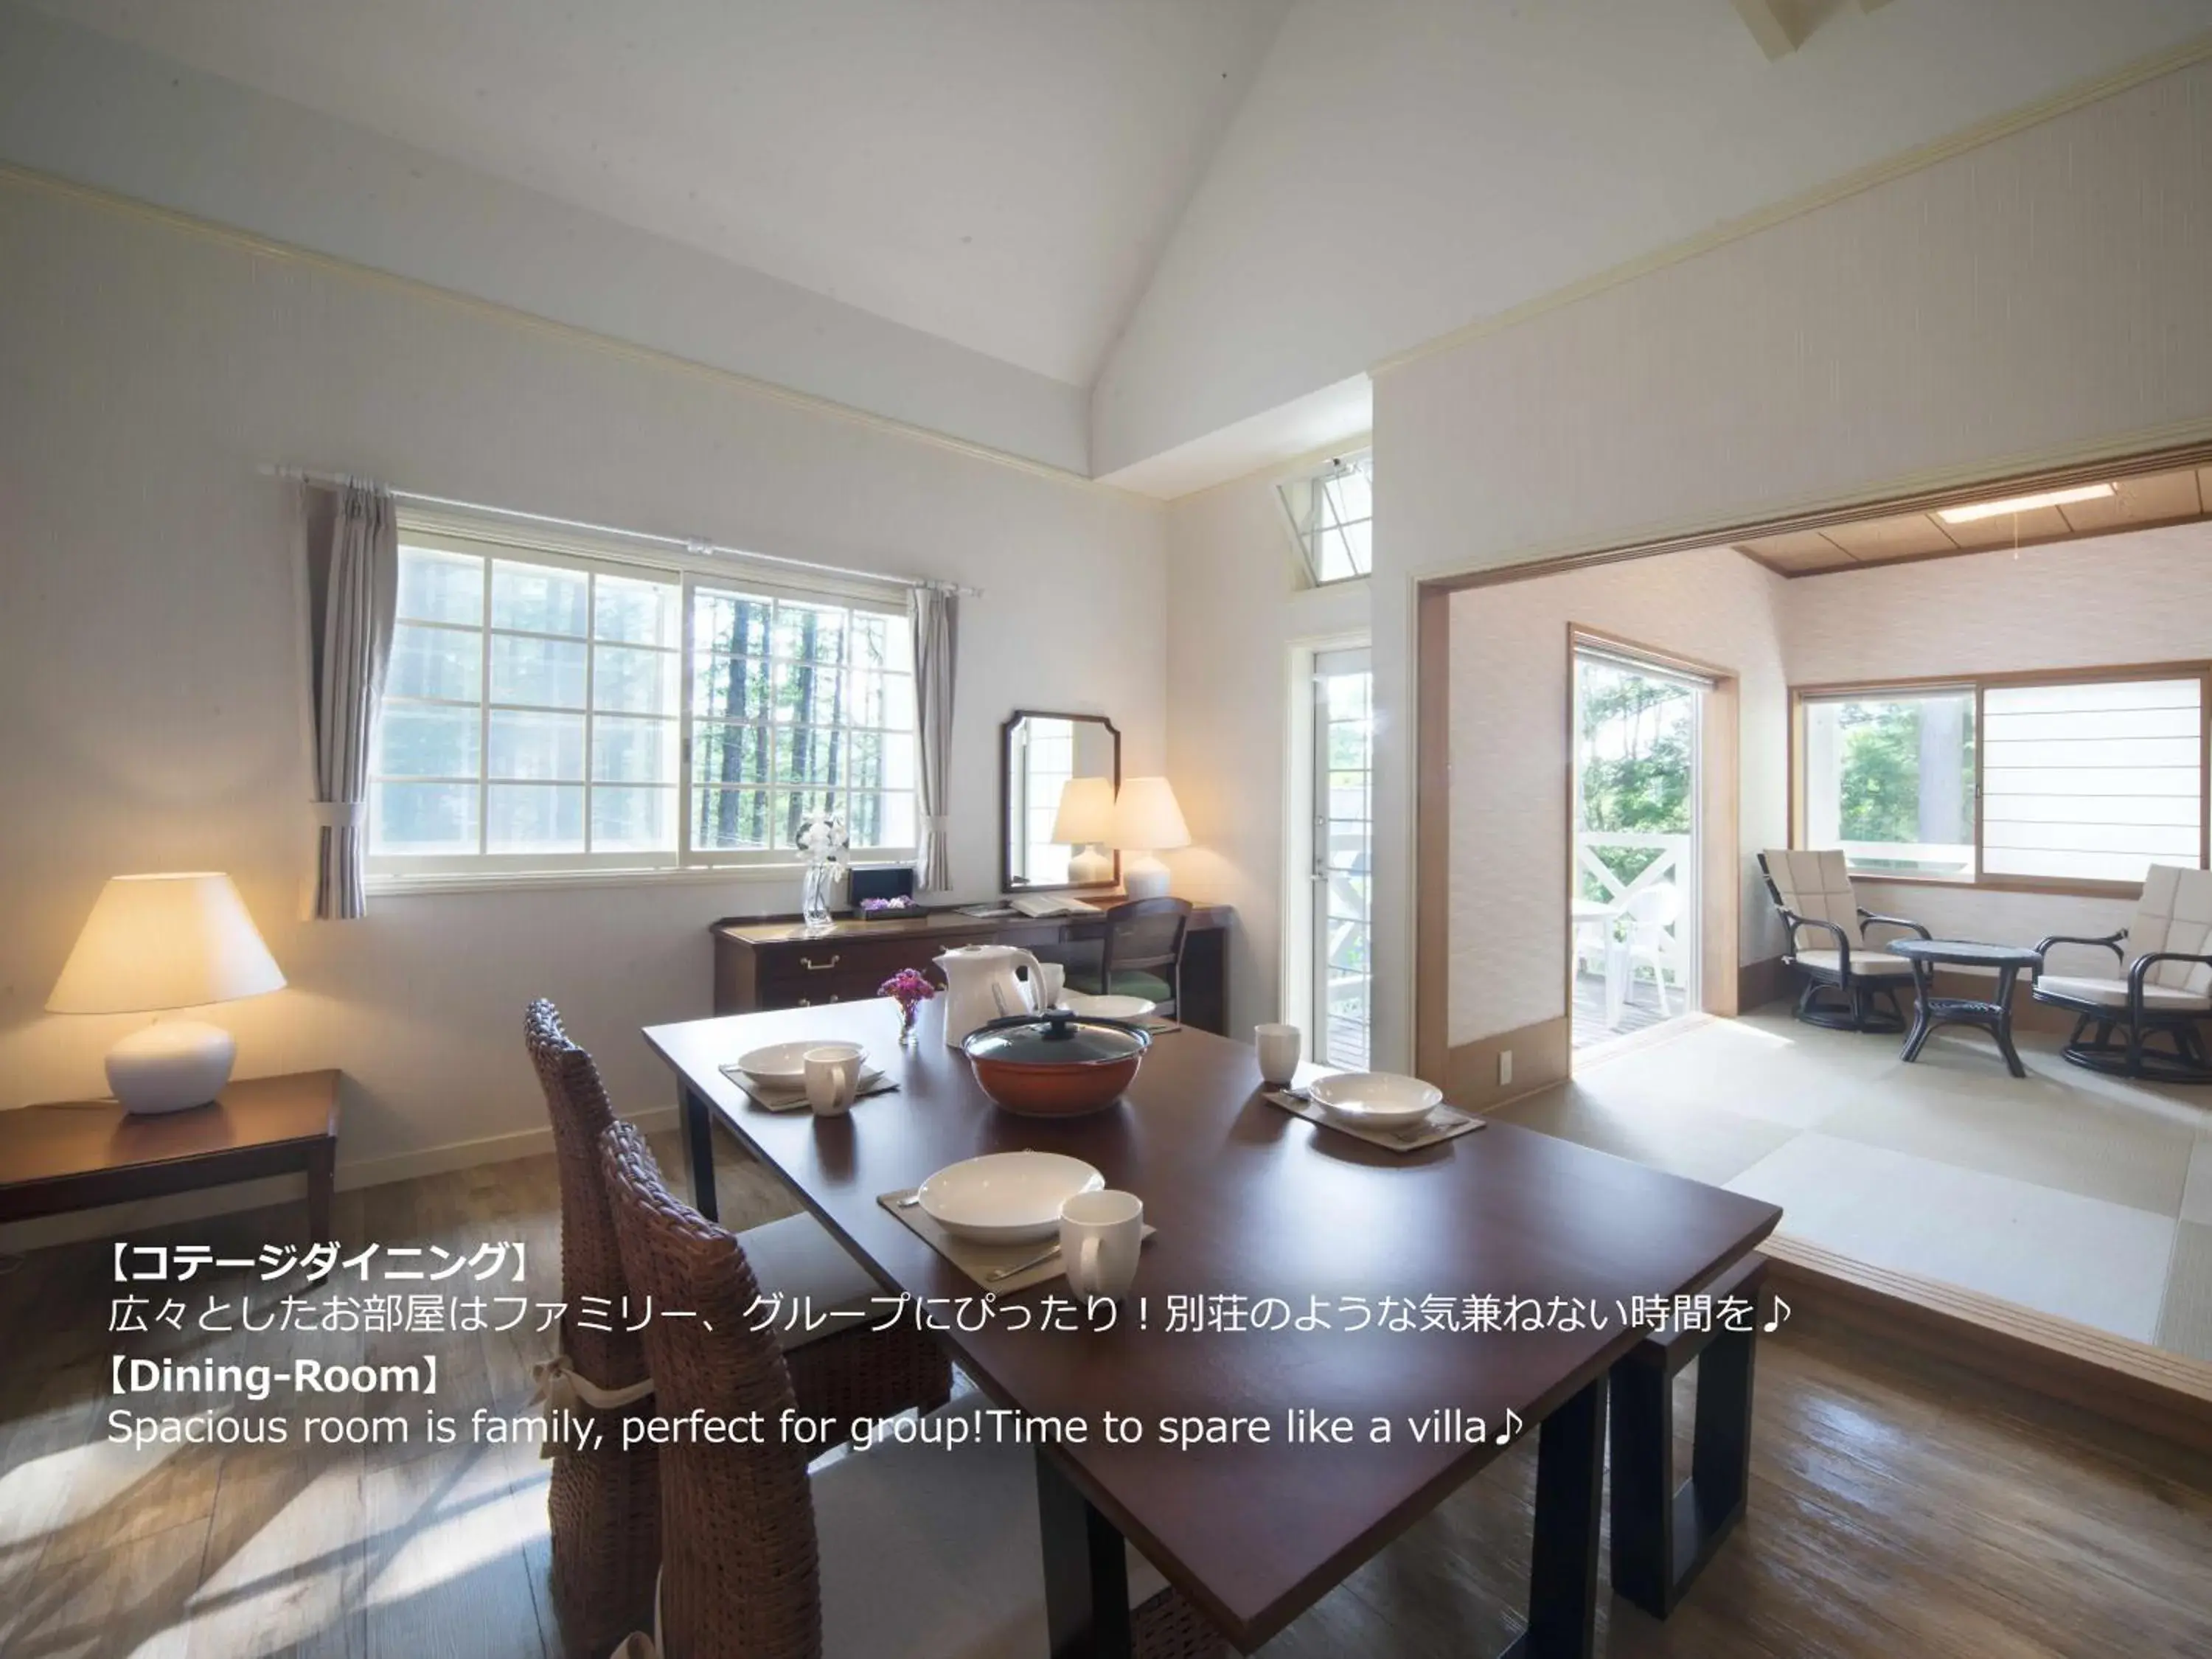 Living room, Dining Area in Resort Villa Takayama